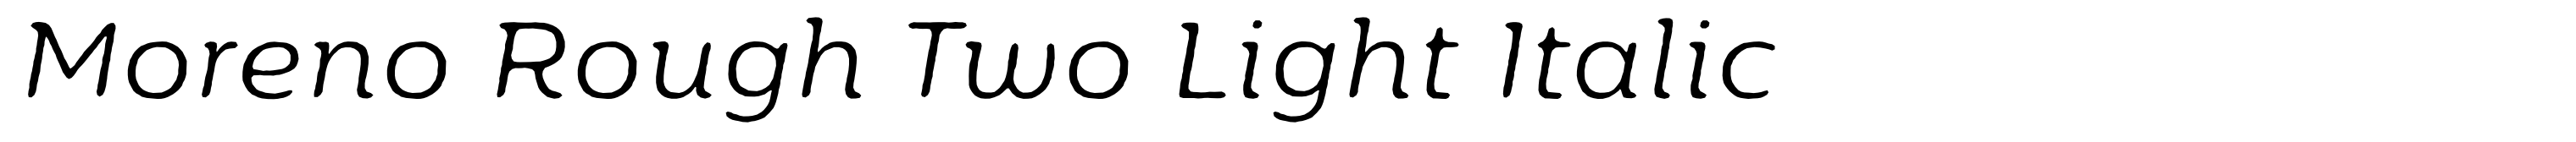 Moreno Rough Two Light Italic